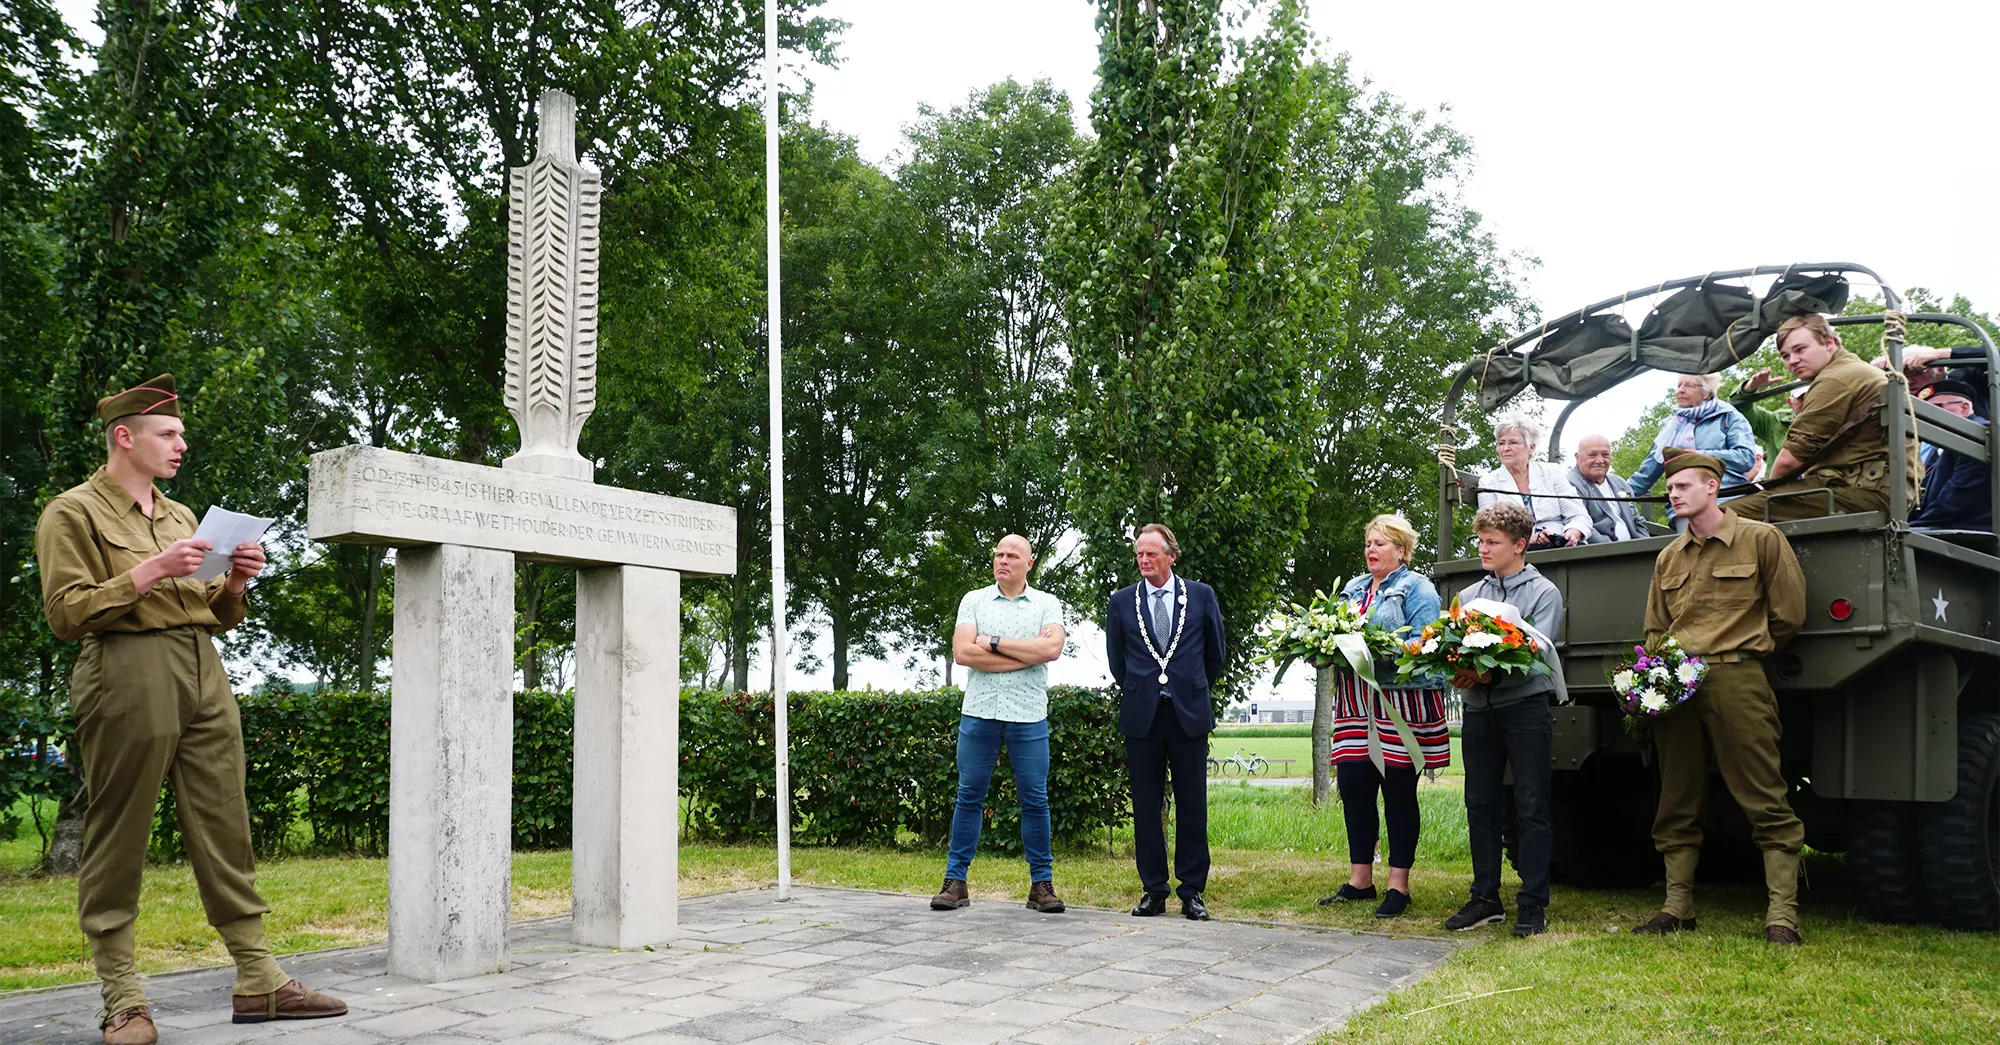 Rondrit in Legervoertuigen met museumbezoekers langs Tweede Wereldoorlog Monumenten in Nederland waarbij de geschiedenis verteld wordt